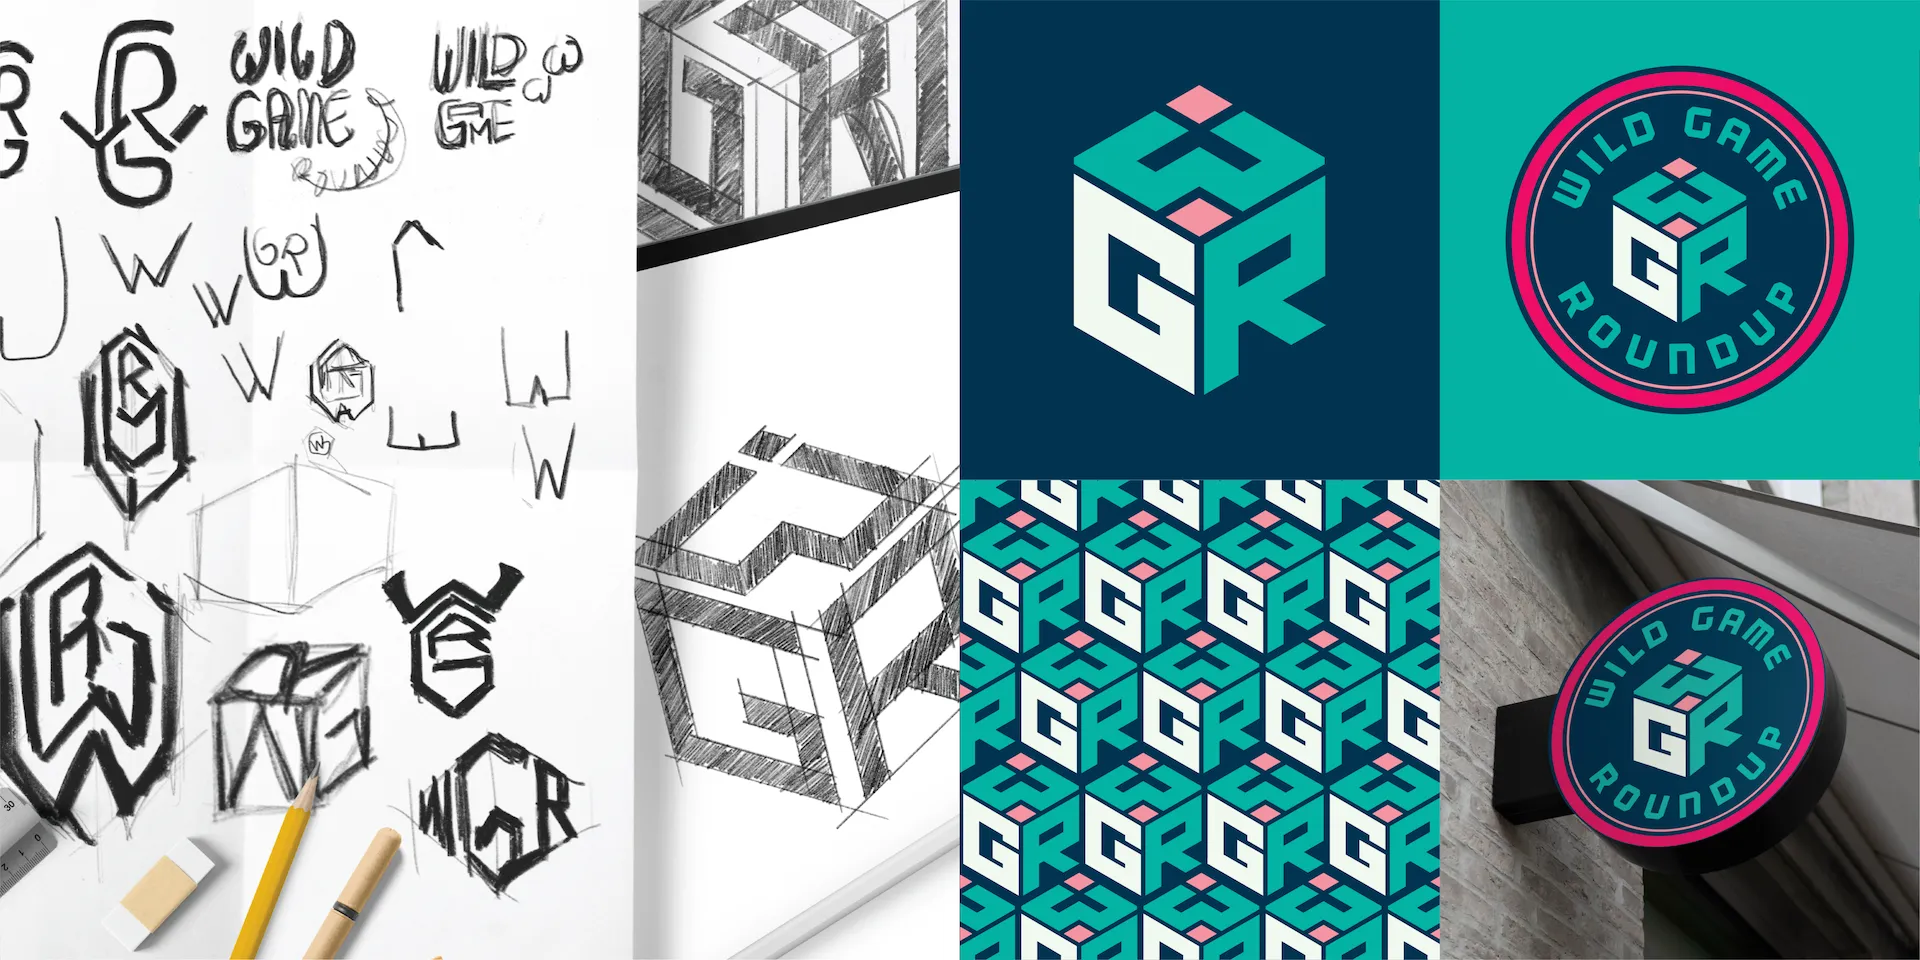 boardgame-logo-design-project